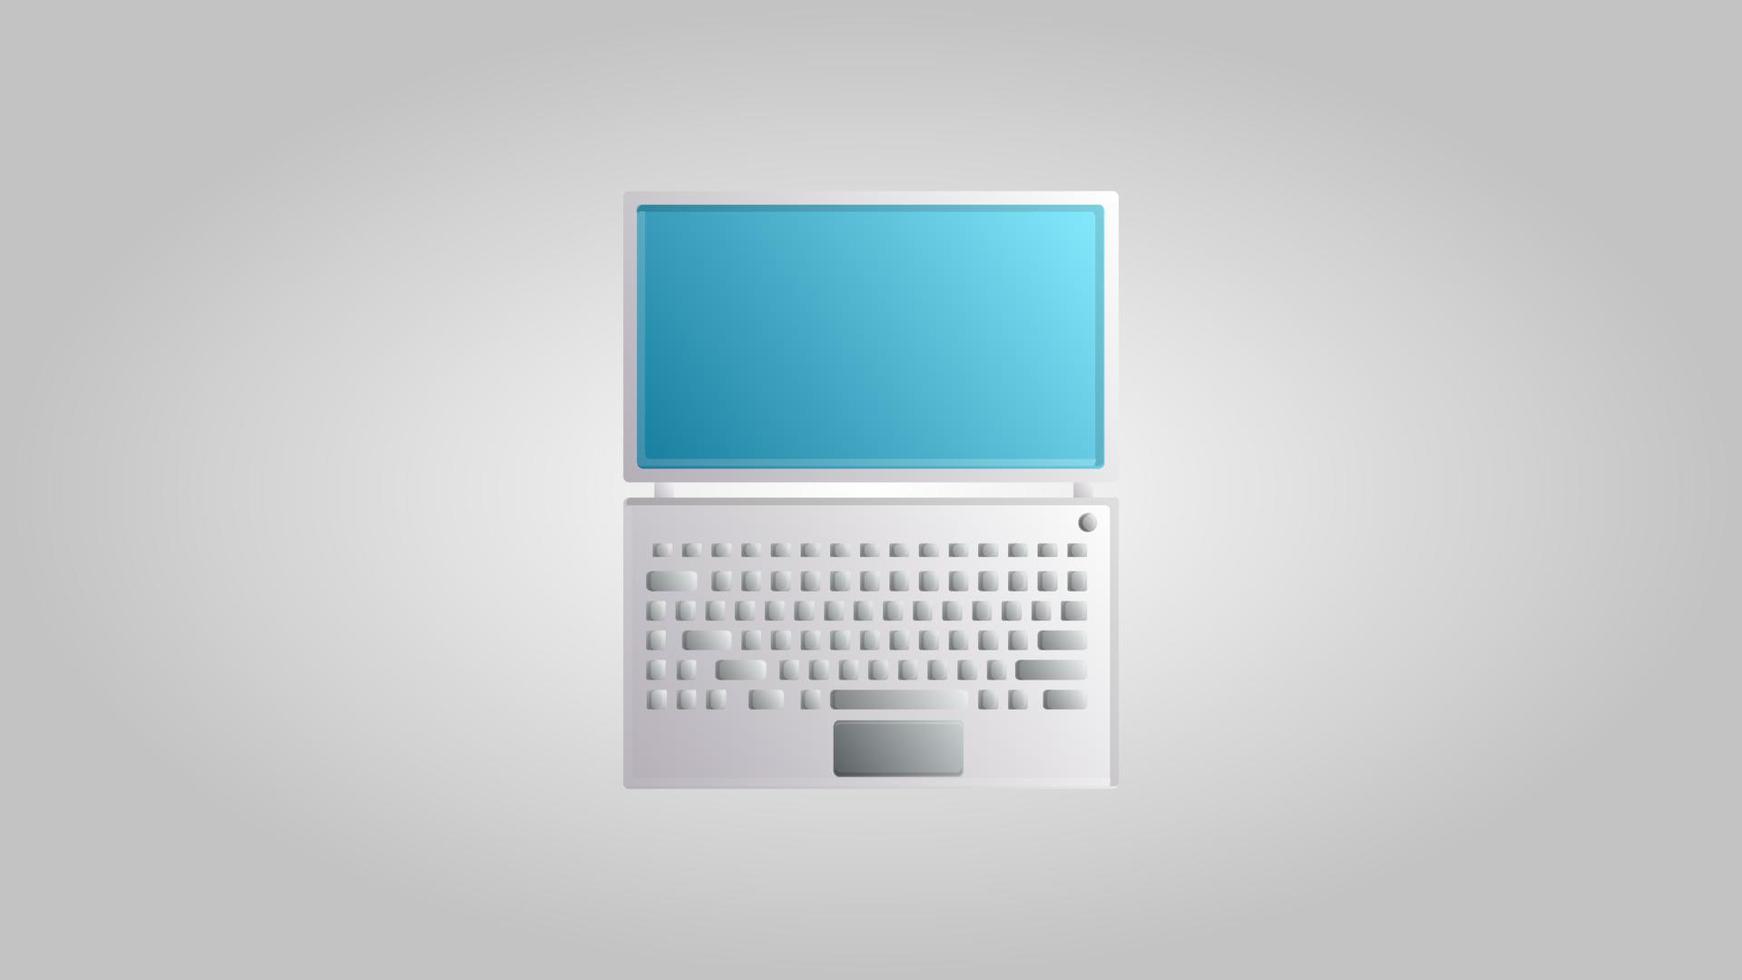 nouvel ordinateur portable numérique moderne pour les jeux, le travail et le divertissement sur fond blanc. illustration vectorielle vecteur